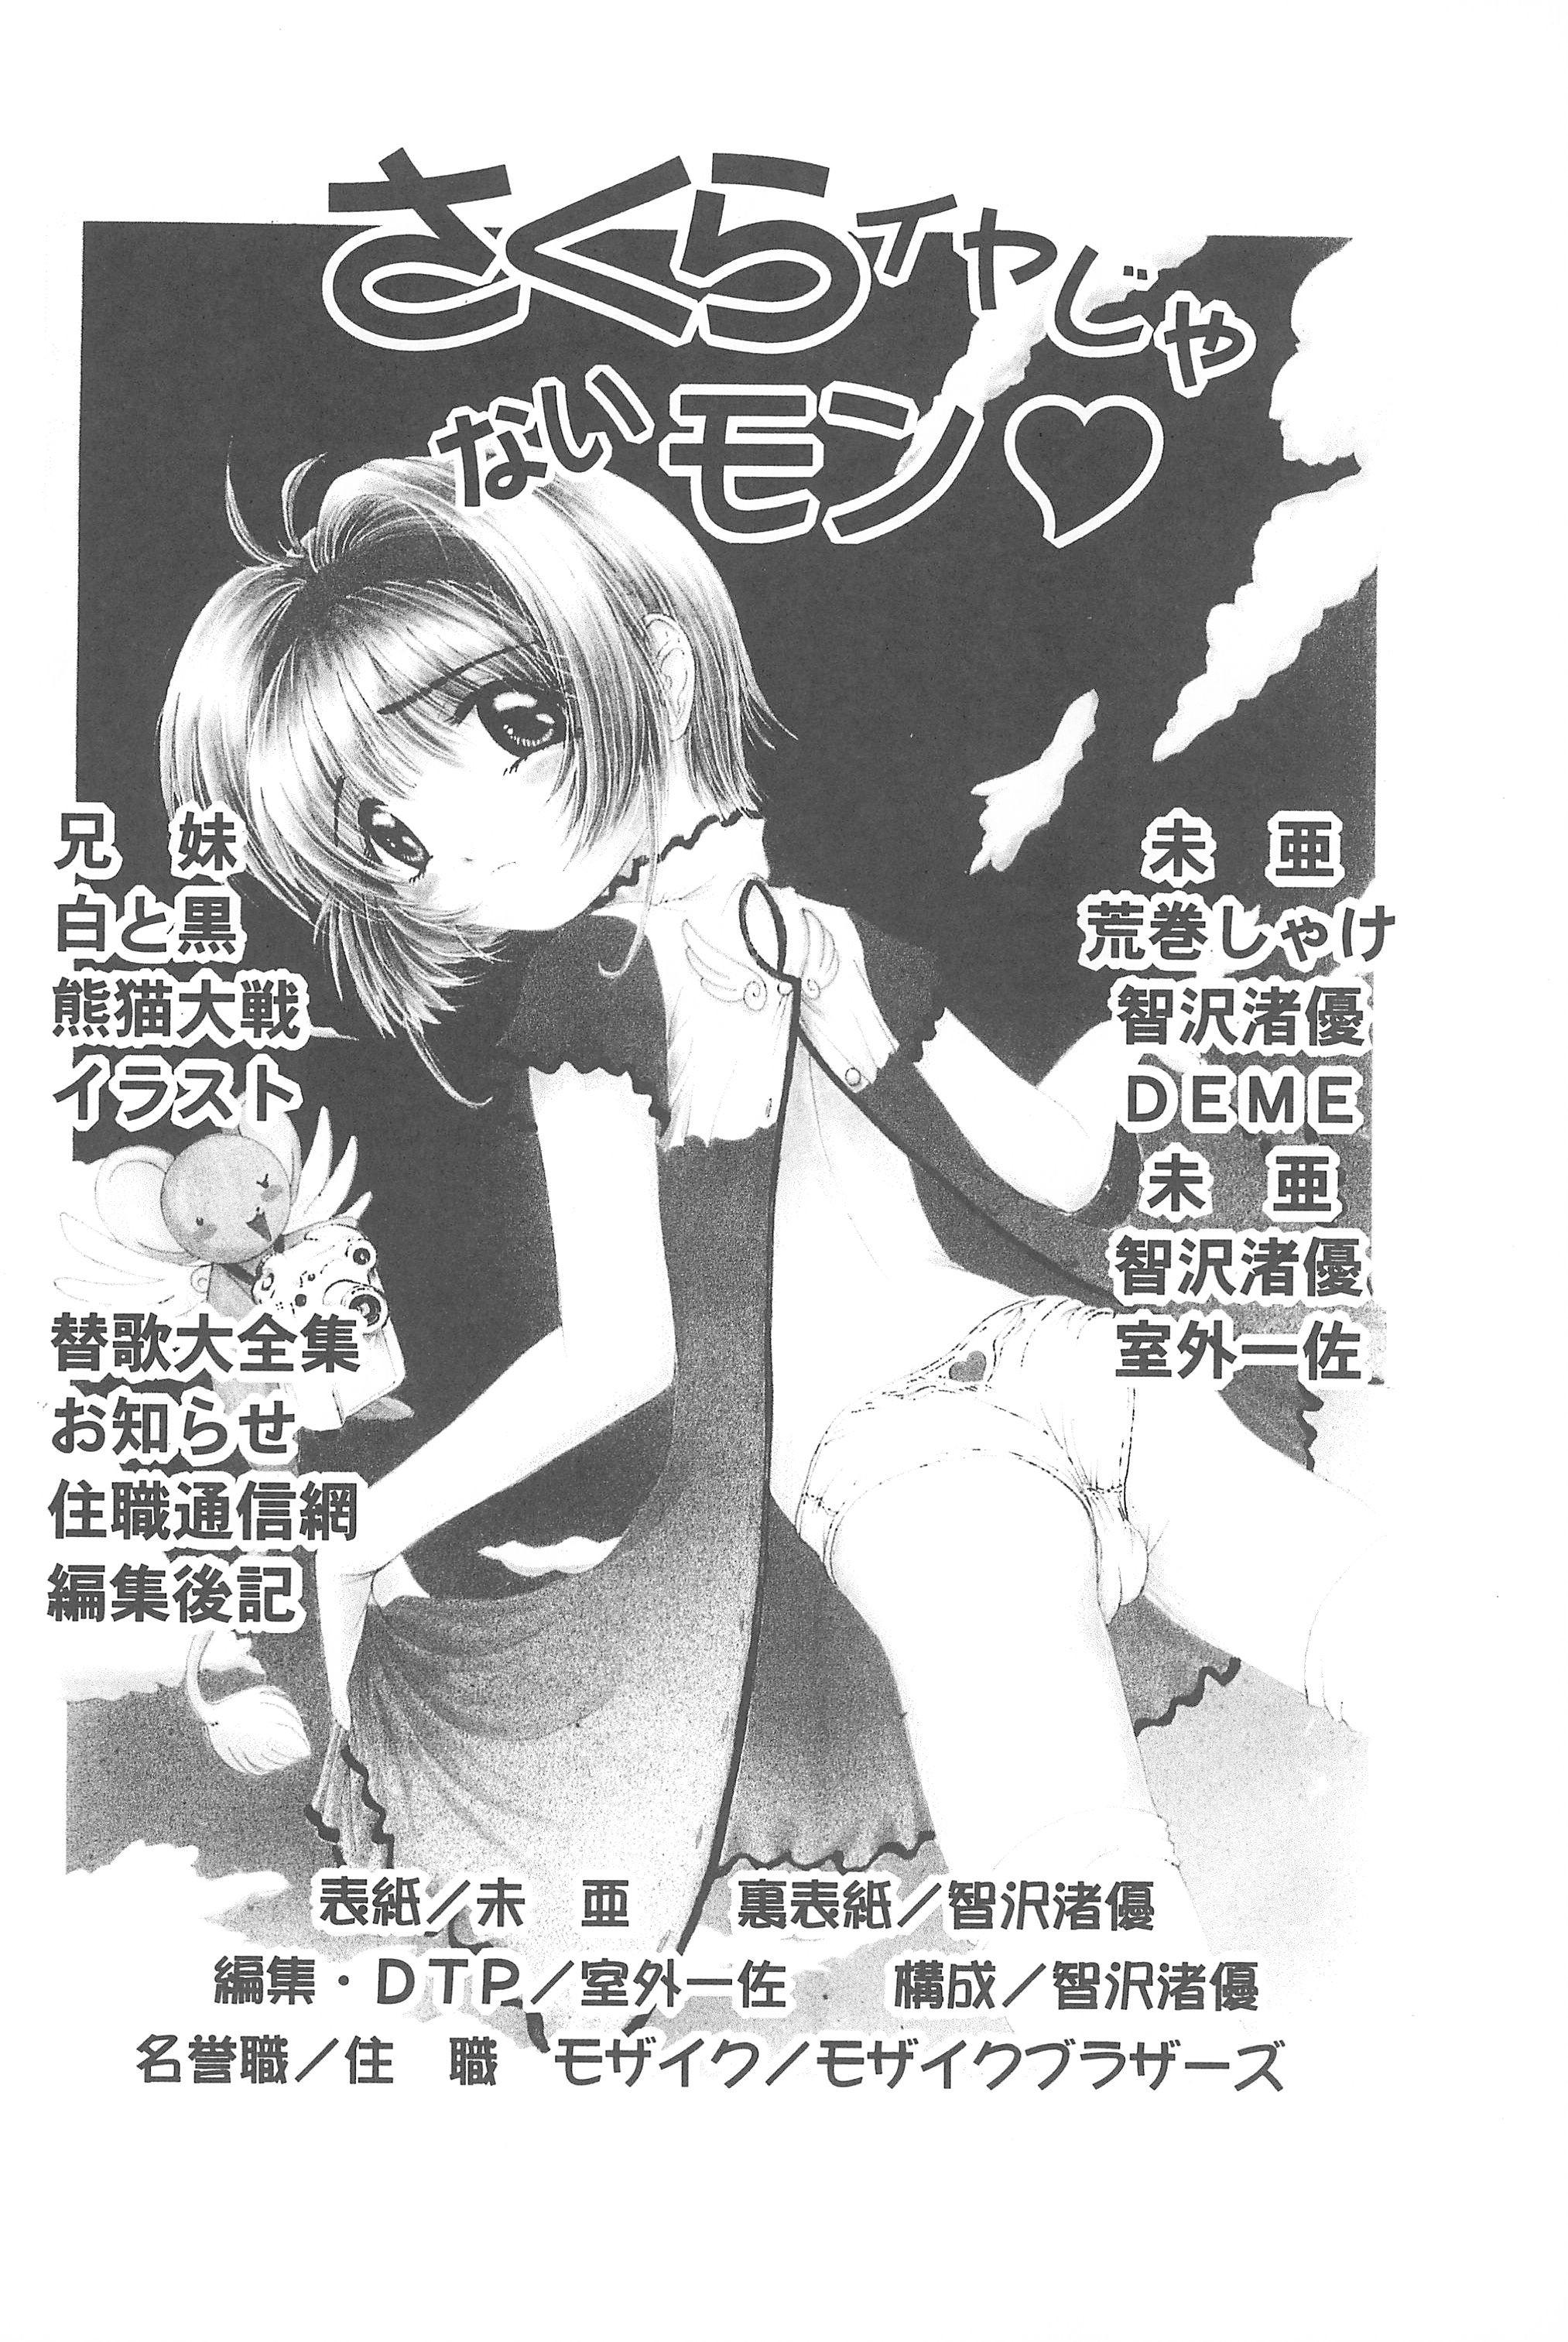 Mamadas Sakura Iya ja nai mon - Cardcaptor sakura Sakura taisen Oriental - Page 6